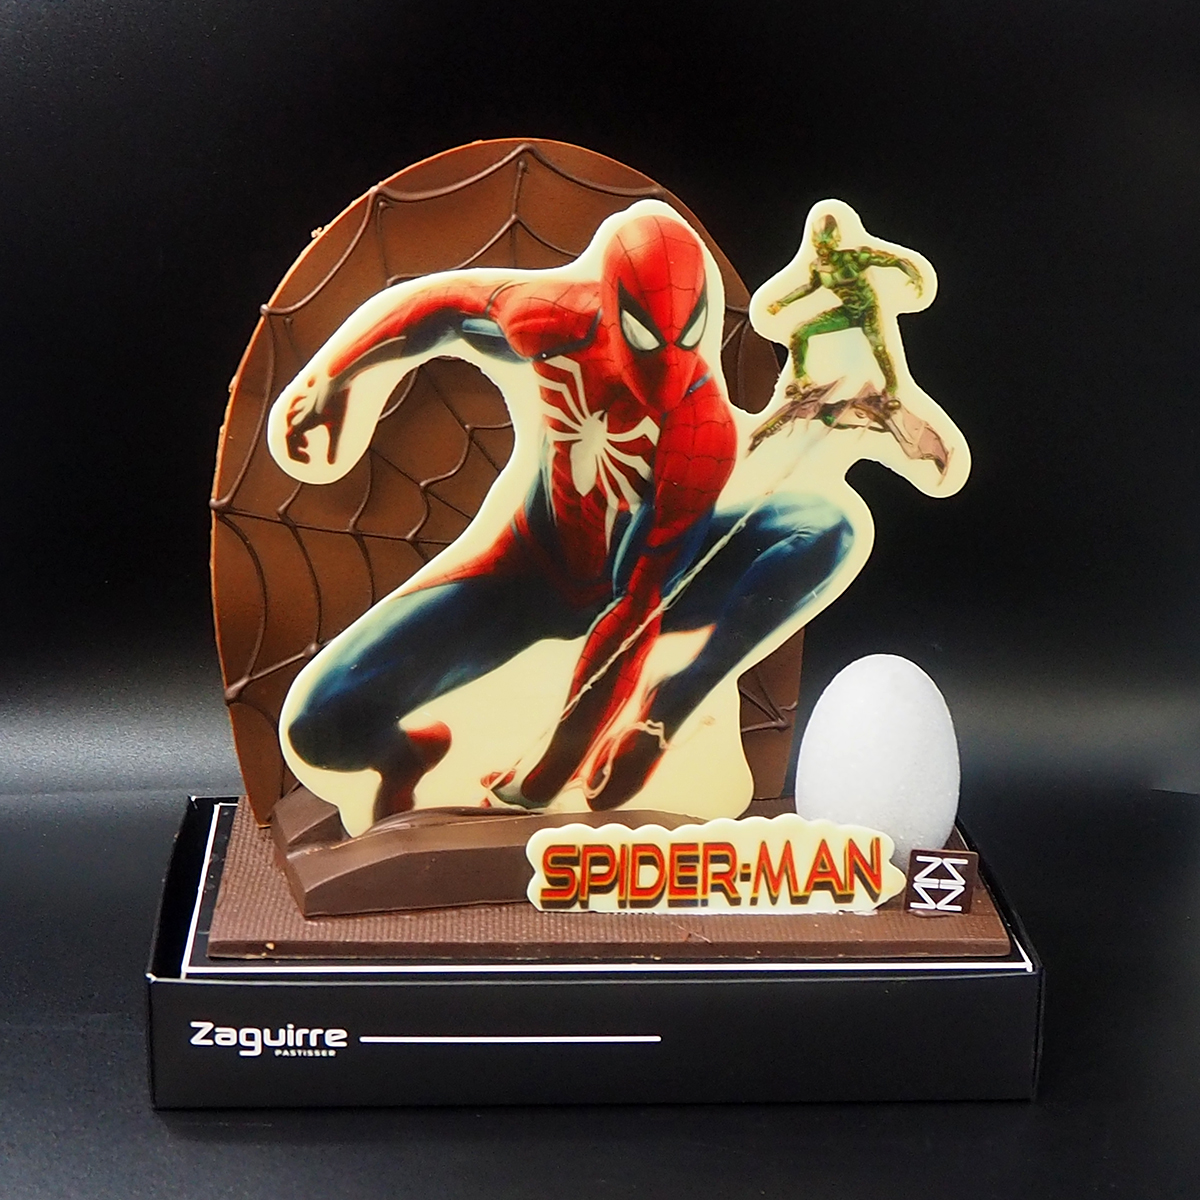 Mona de Pascua de chocolate de Spiderman elaborada por Zaguirre Pastisser